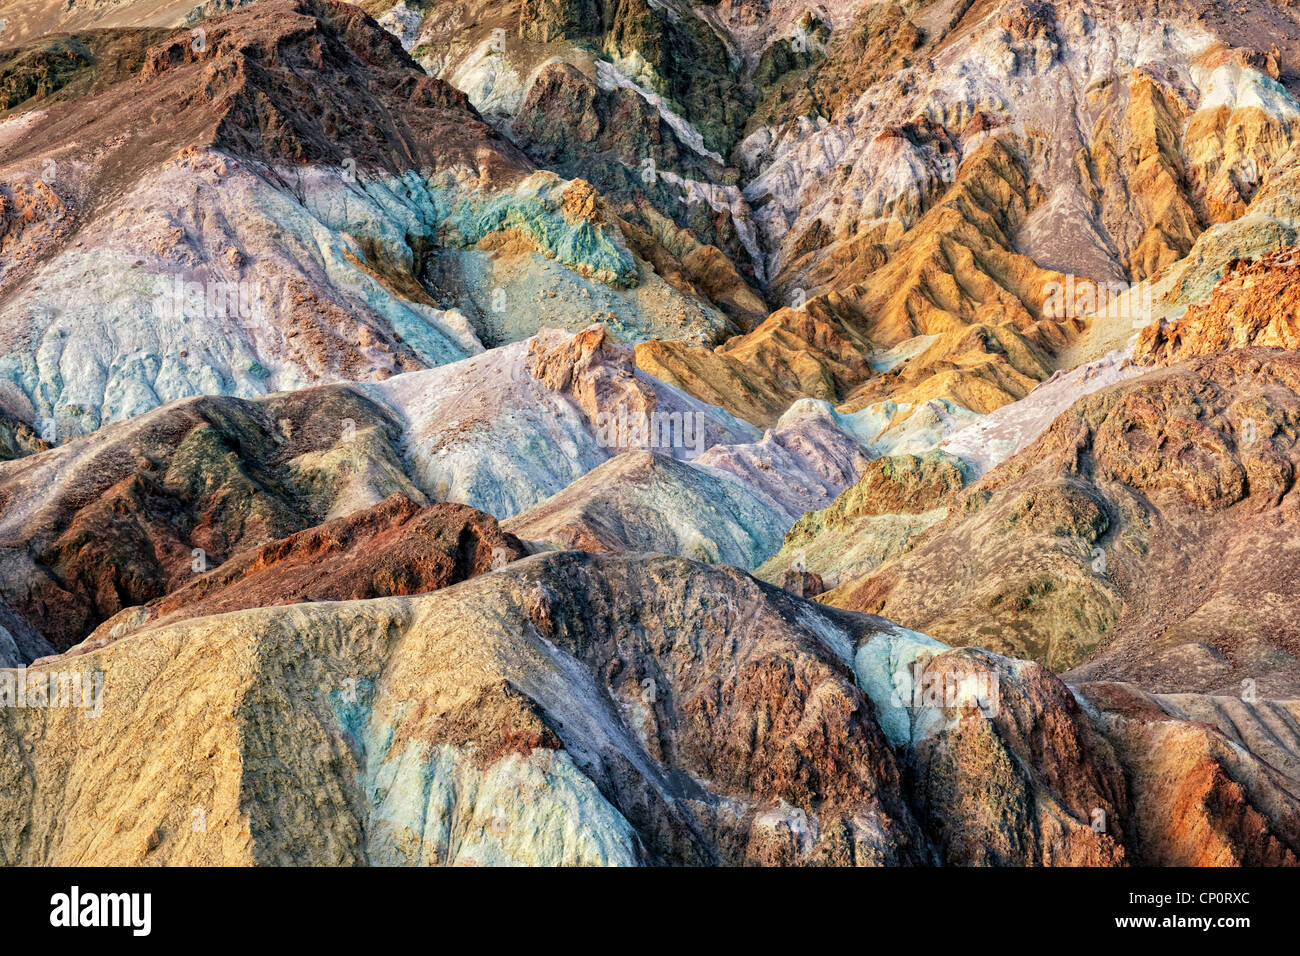 La ossidazione di metalli diversi hanno creato questi colori vividi dell'artista tavolozza in California il Parco Nazionale della Valle della Morte. Foto Stock